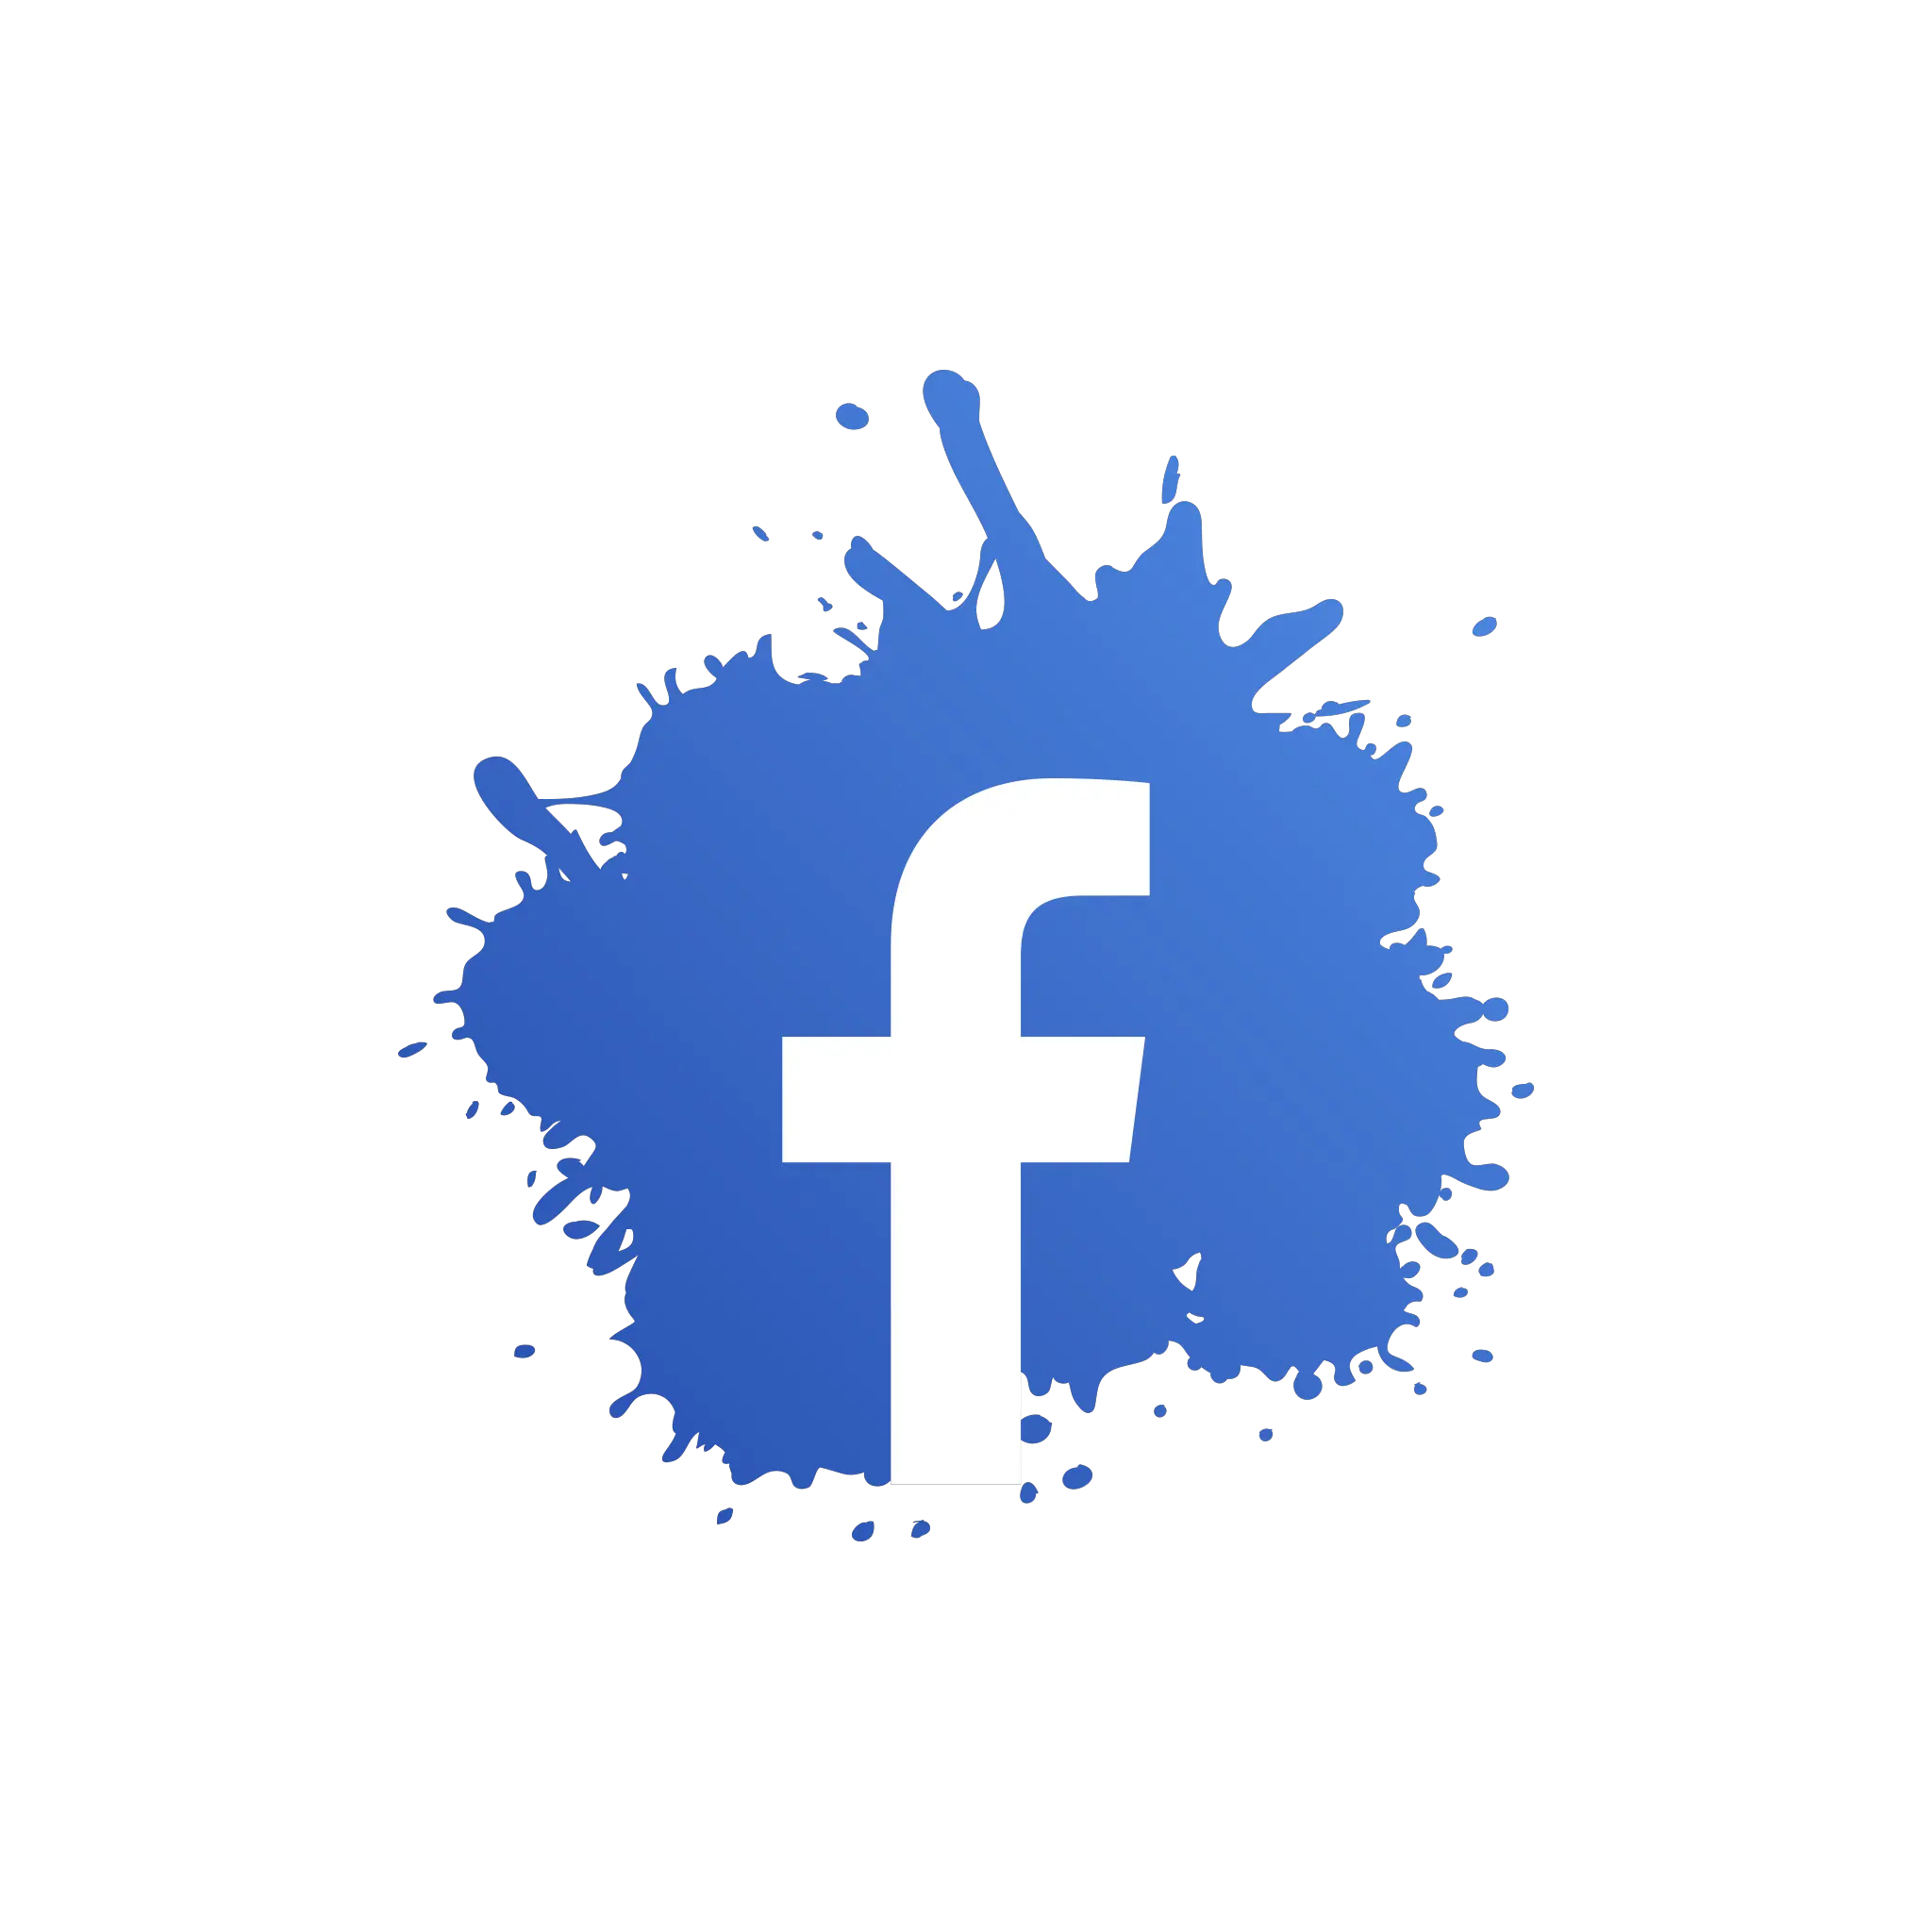 Splash Facebook Icon Png Image Free Instagram Splash Logo Png Photos Icon Png